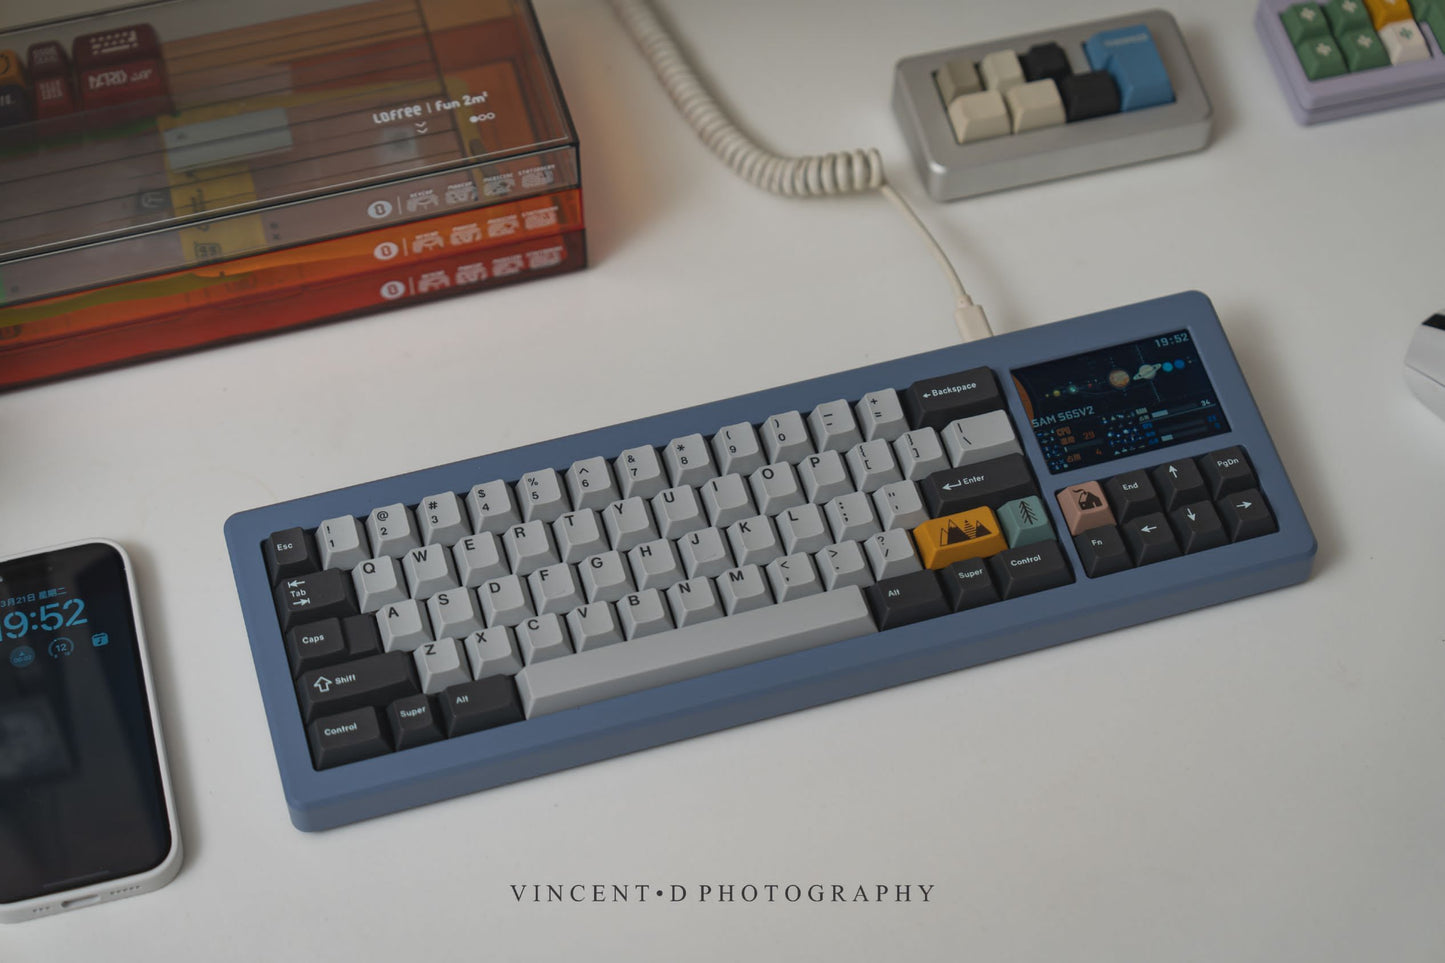 [Group-Buy] S65 V2 Barebones Keyboard Kit